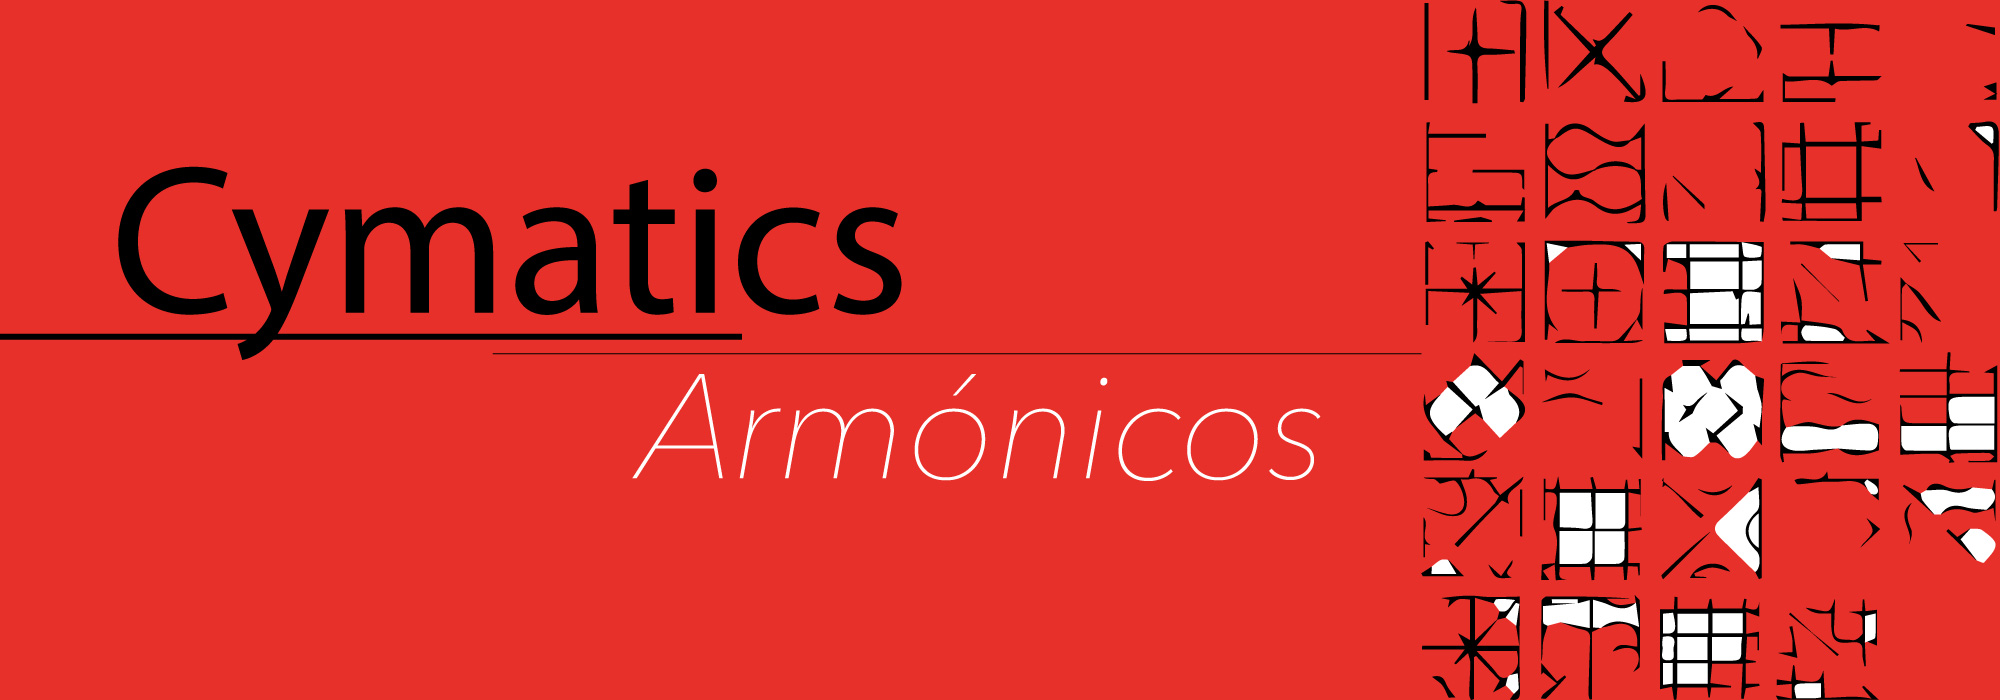 Cymatics: Armónicos, Overtones.